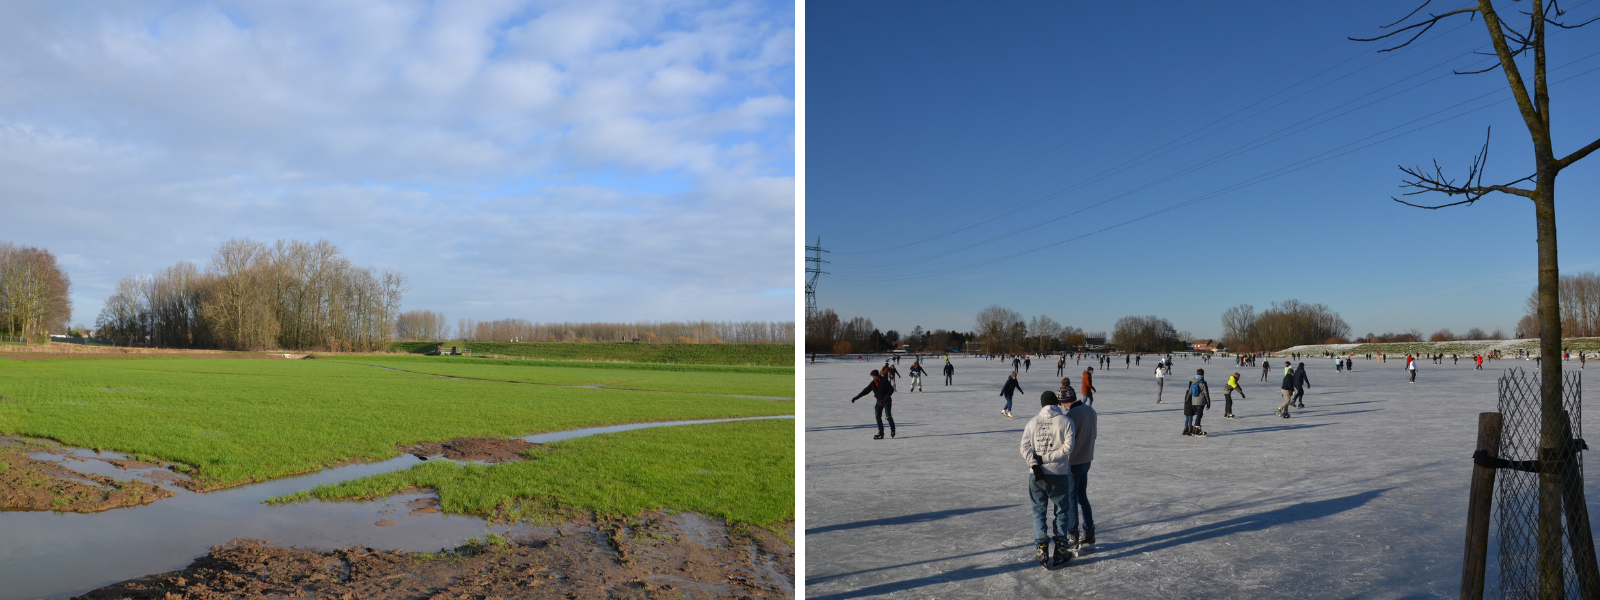 Links: de herinrichting van de Bleukensweide als overstromingsgebied; rechts: de Bleukensweide als ijsbaan (foto's: Karel Van Bruyssel)